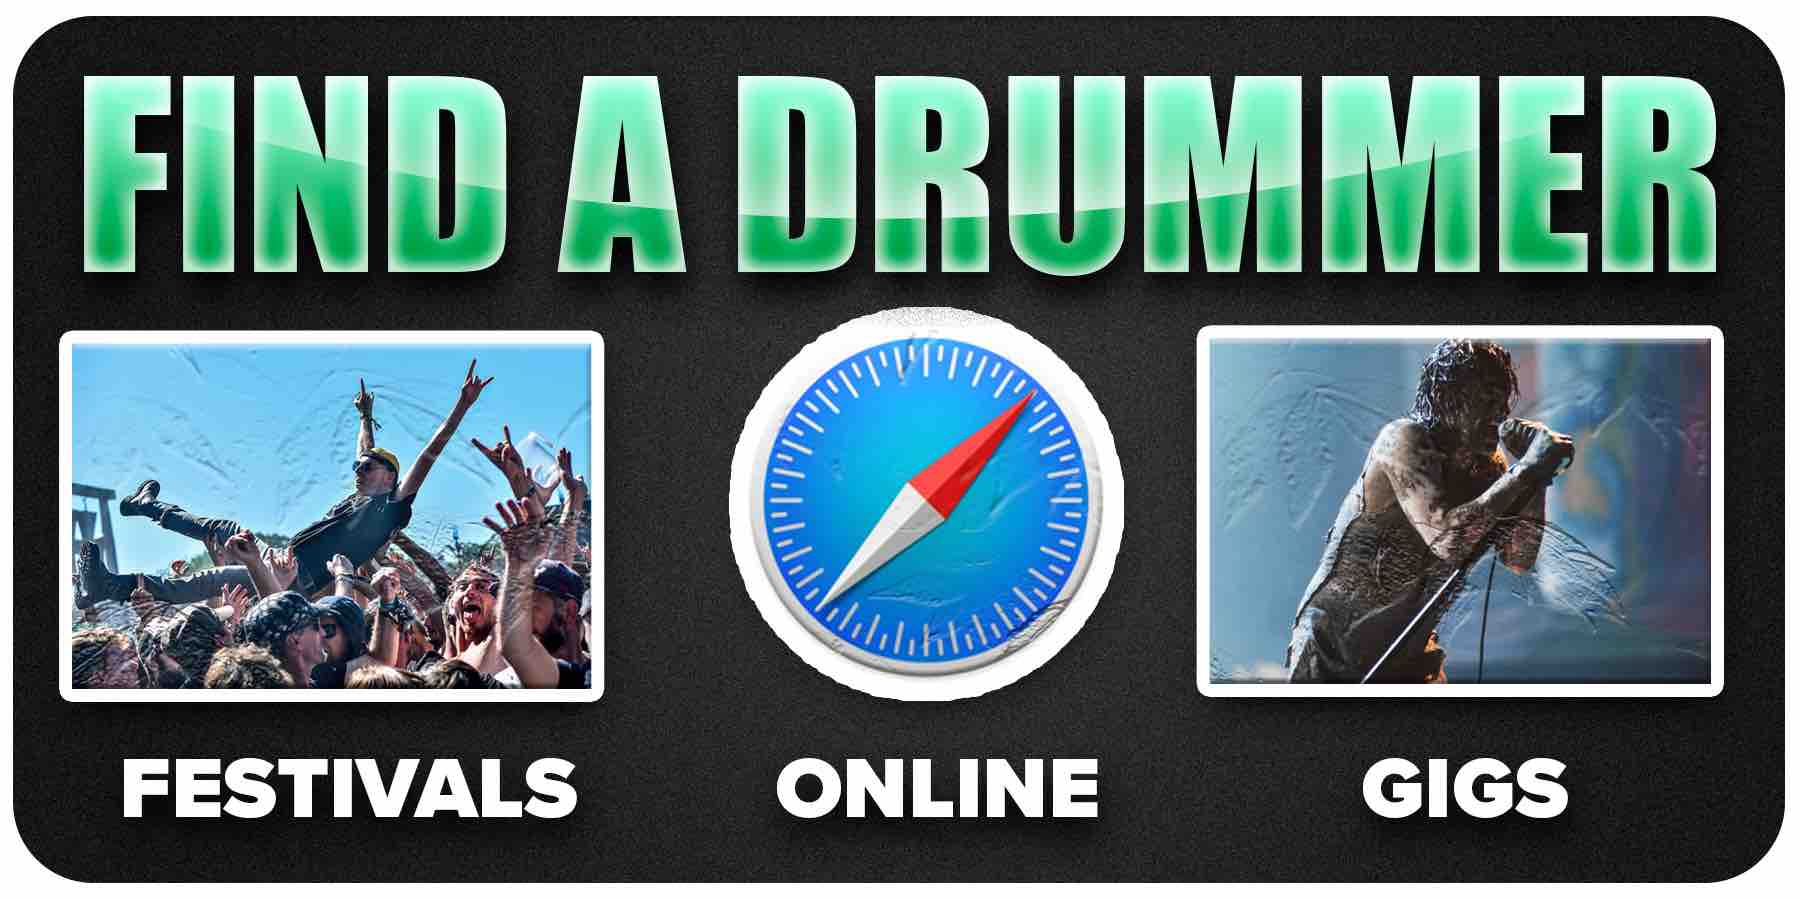 3 Ways to Find a Drummer